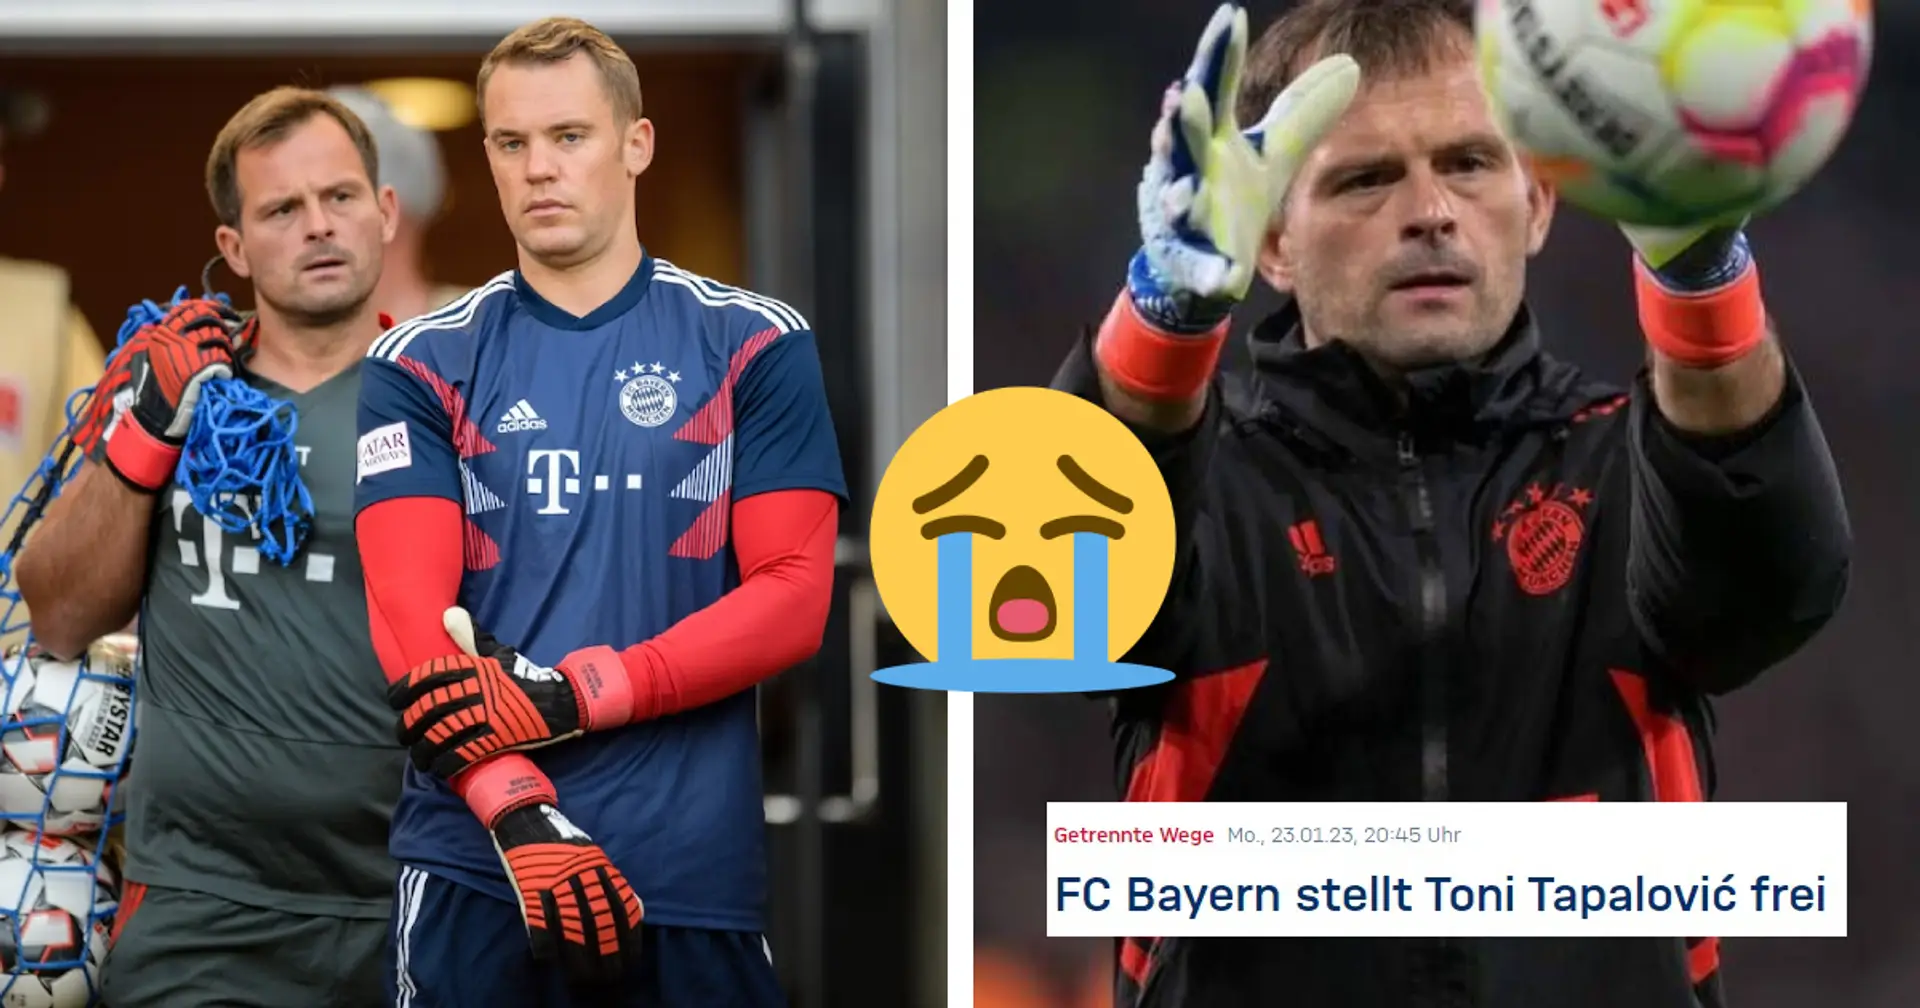 Neuer übt harte Kritik an Bayern wegen Tapalovic-Aus: "Hatte das Gefühl, dass mir das Herz herausgerissen wurde"